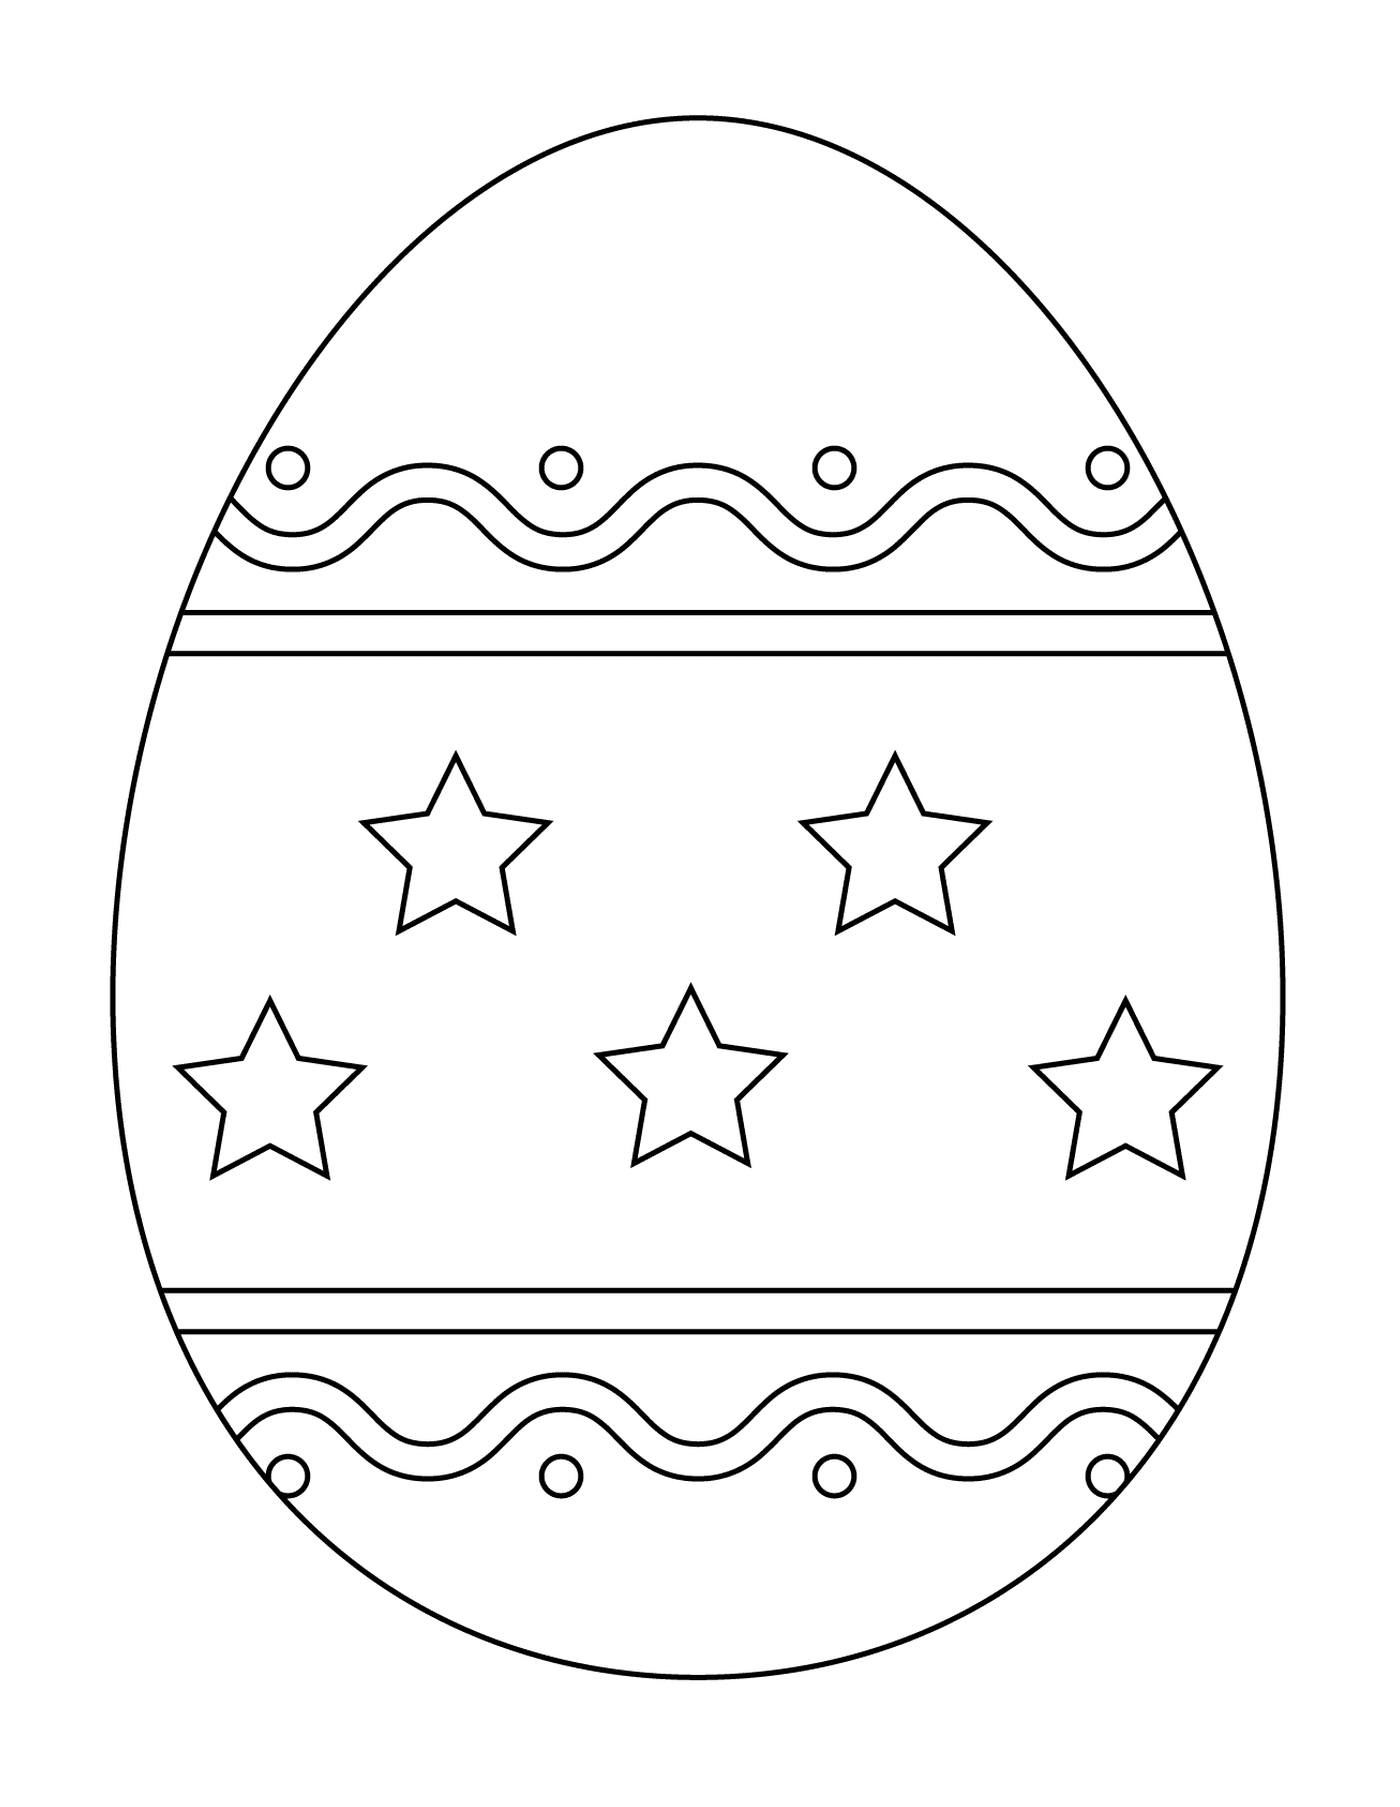  Пасхальное яйцо с простым шаблоном 